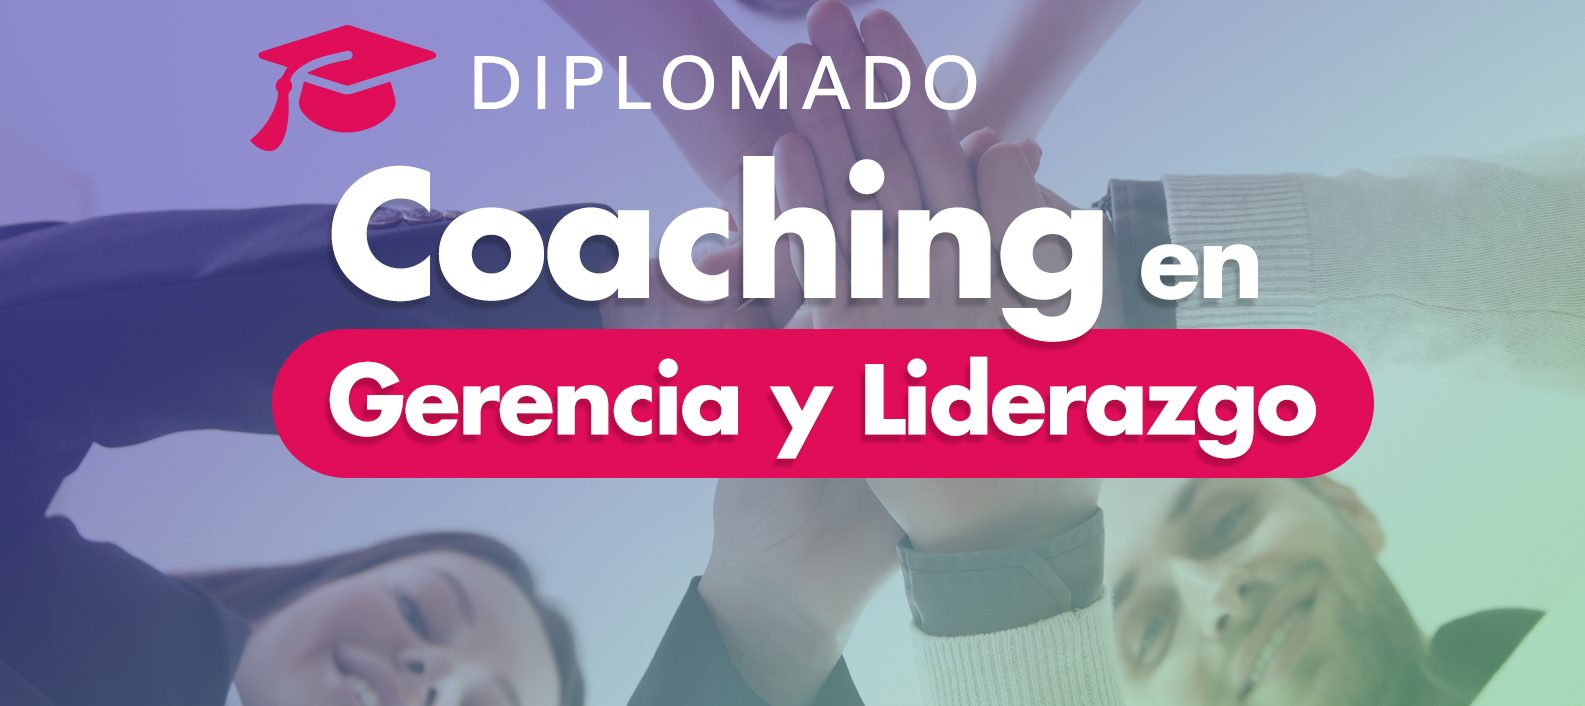 Diplomado: Coaching en Gerencia y Liderazgo